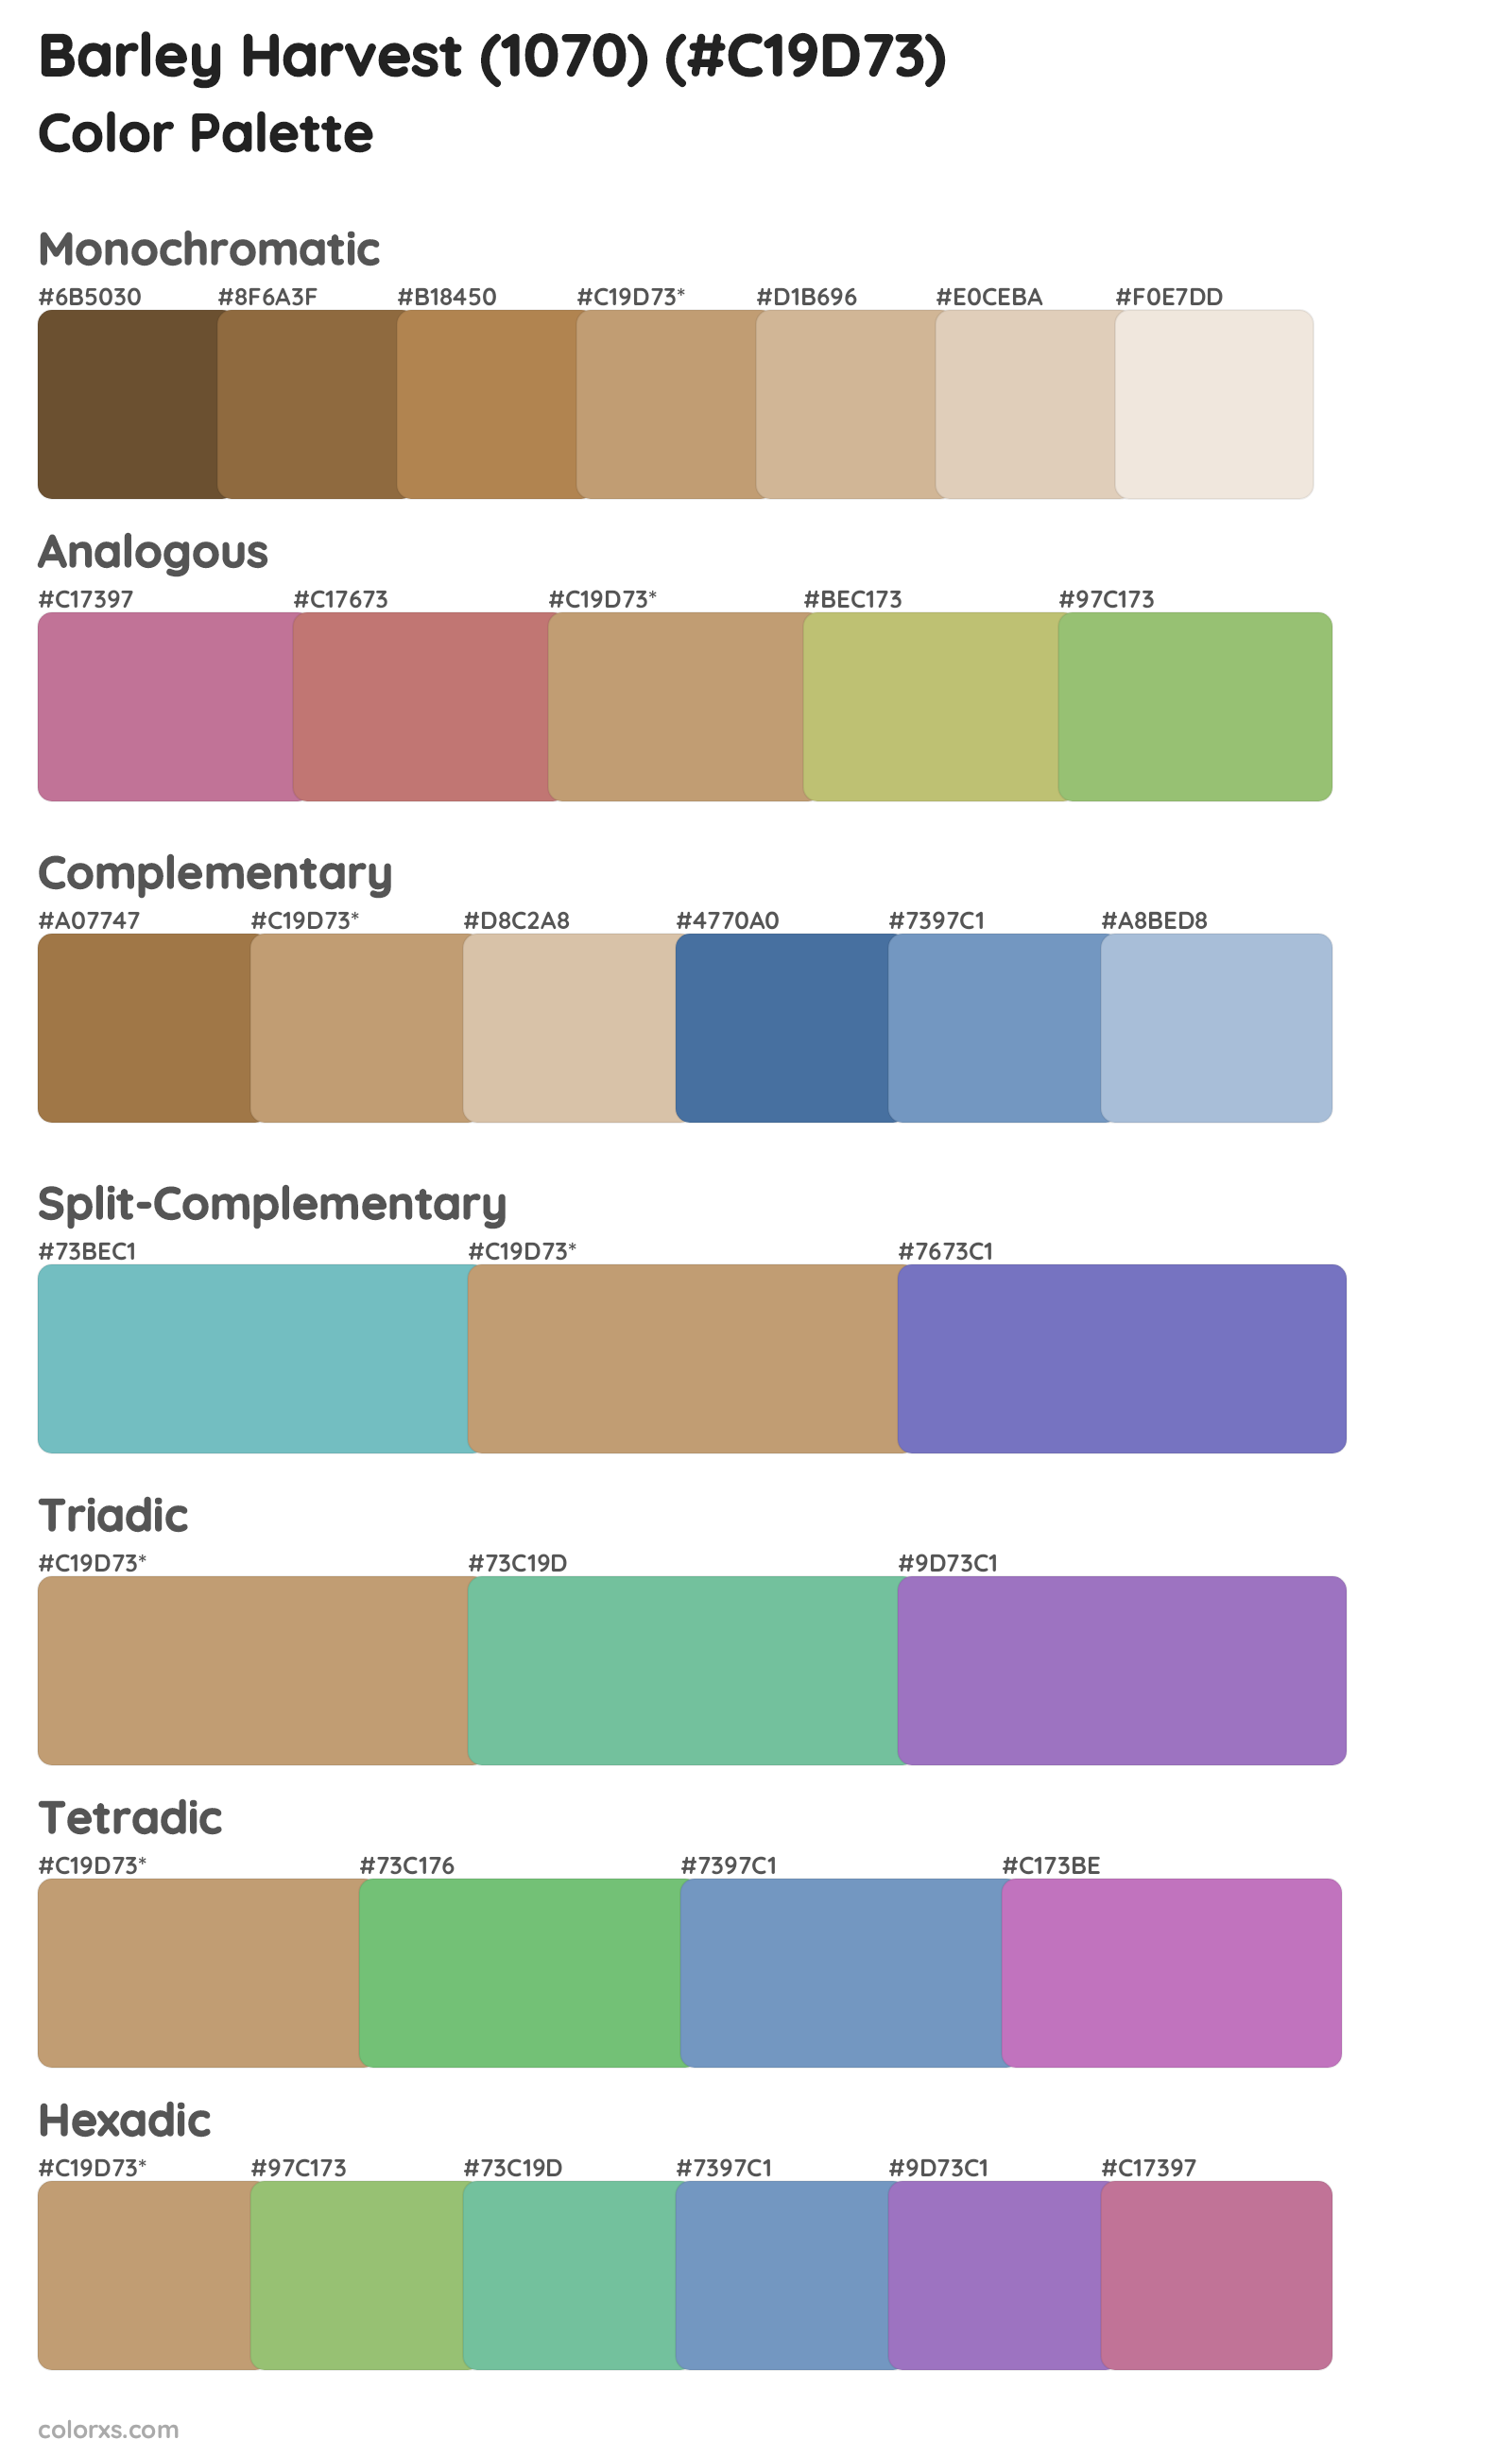 Barley Harvest (1070) Color Scheme Palettes